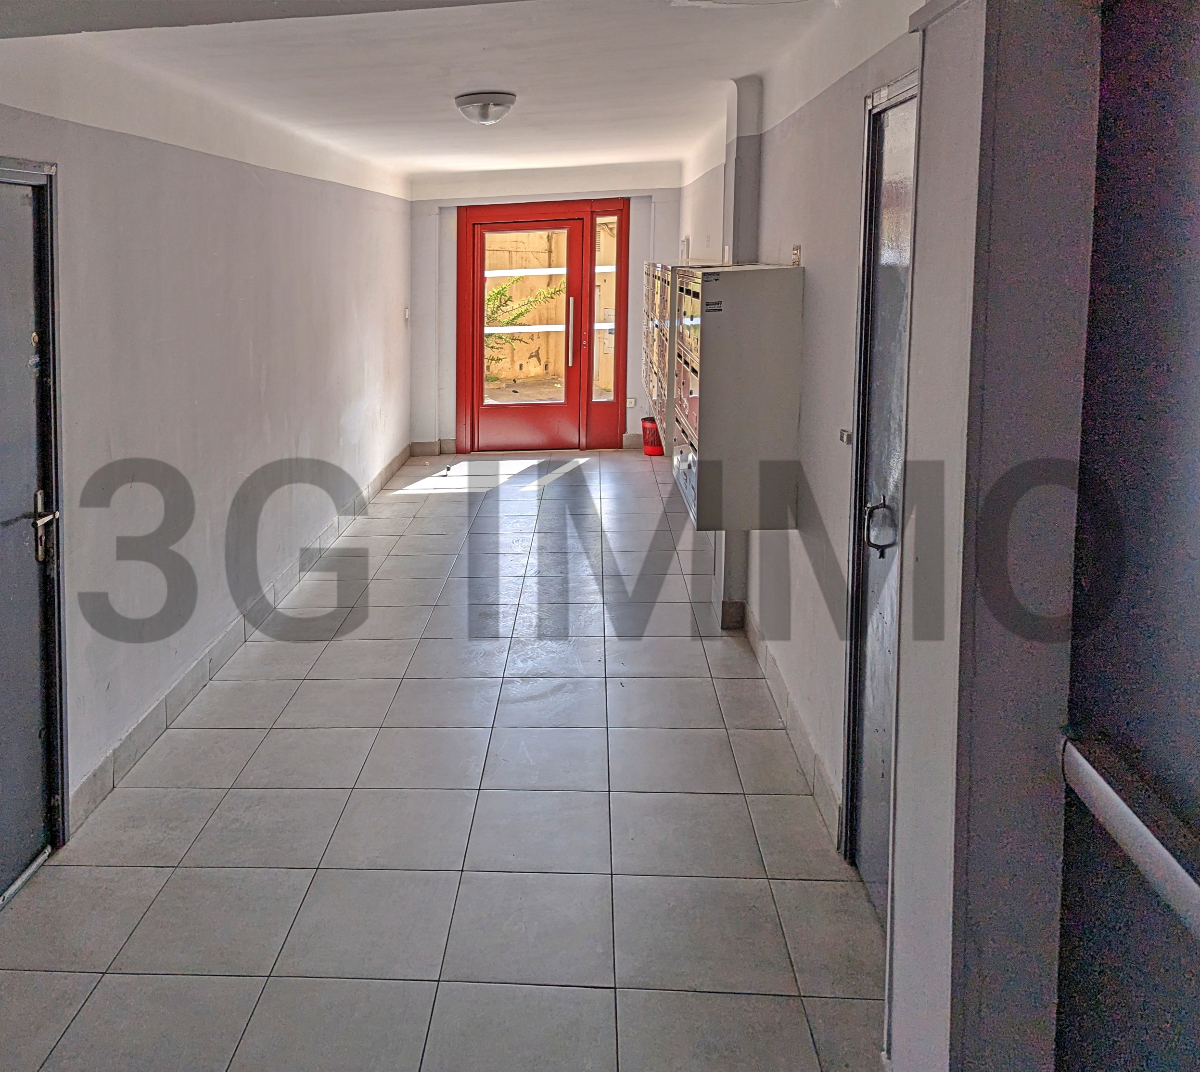 Photo mobile 15 | Marseille (13004) | Appartement de 55.00 m² | Type 4 | 142000 € |  Référence: 171880AM